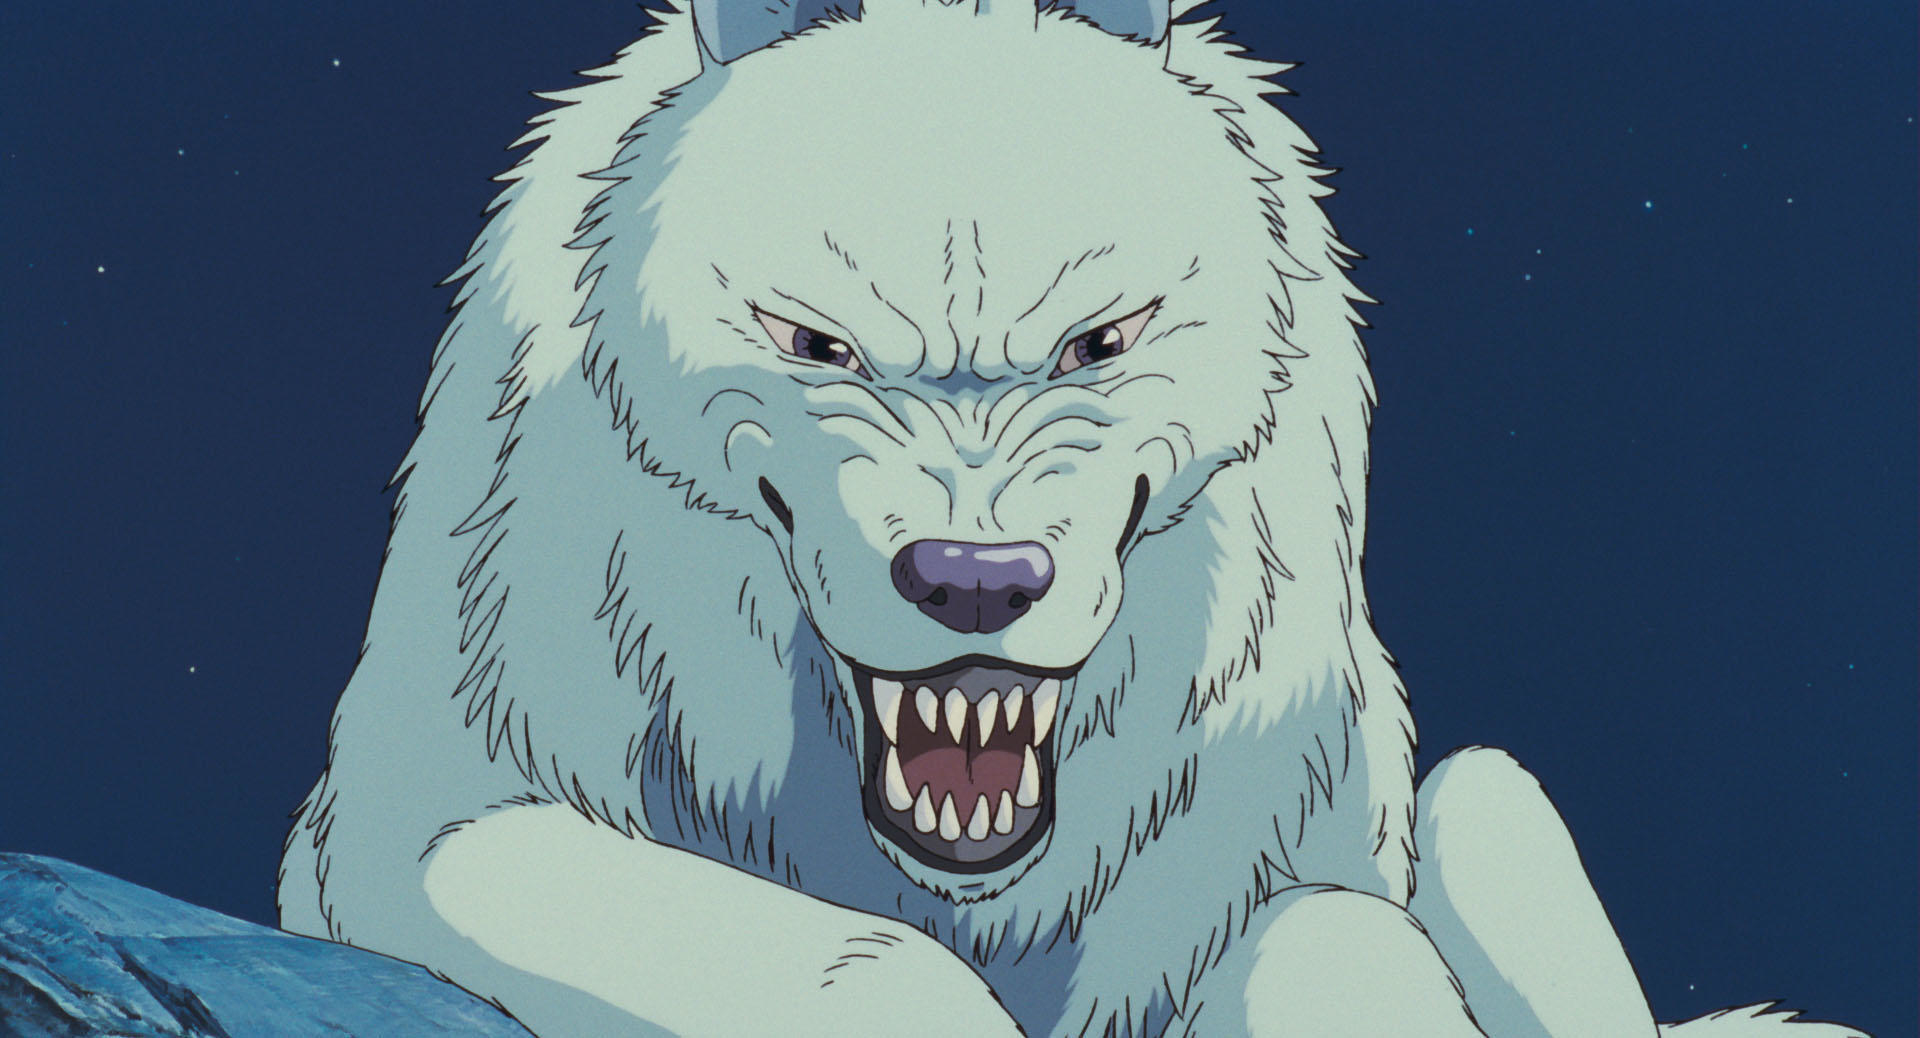 アニメーションの狼のキャラクター、牙をむき出しにして威嚇している様子。